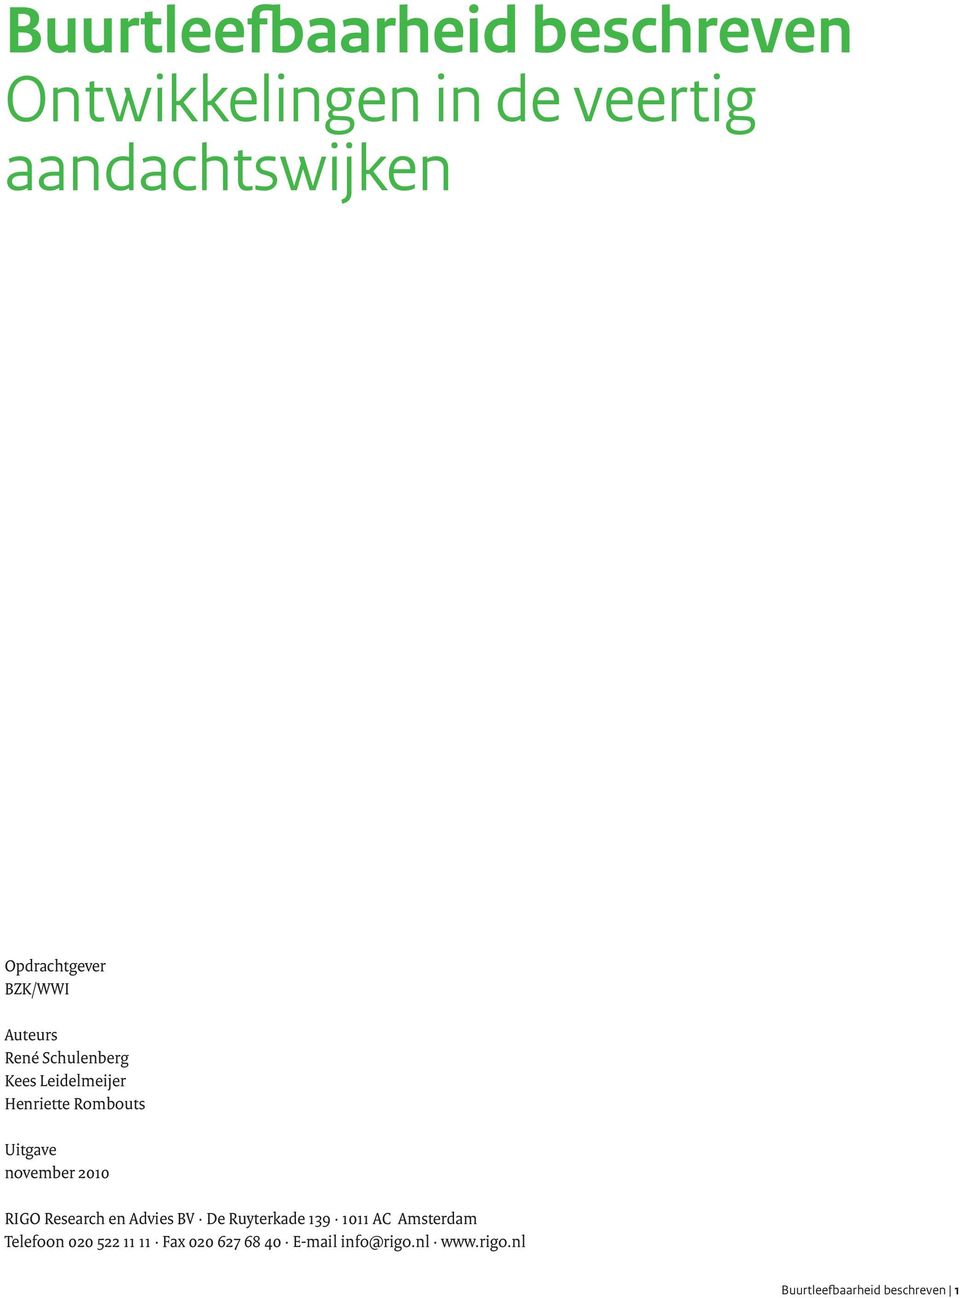 Uitgave november 2010 RIGO Research en Advies BV De Ruyterkade 139 1011 AC Amsterdam